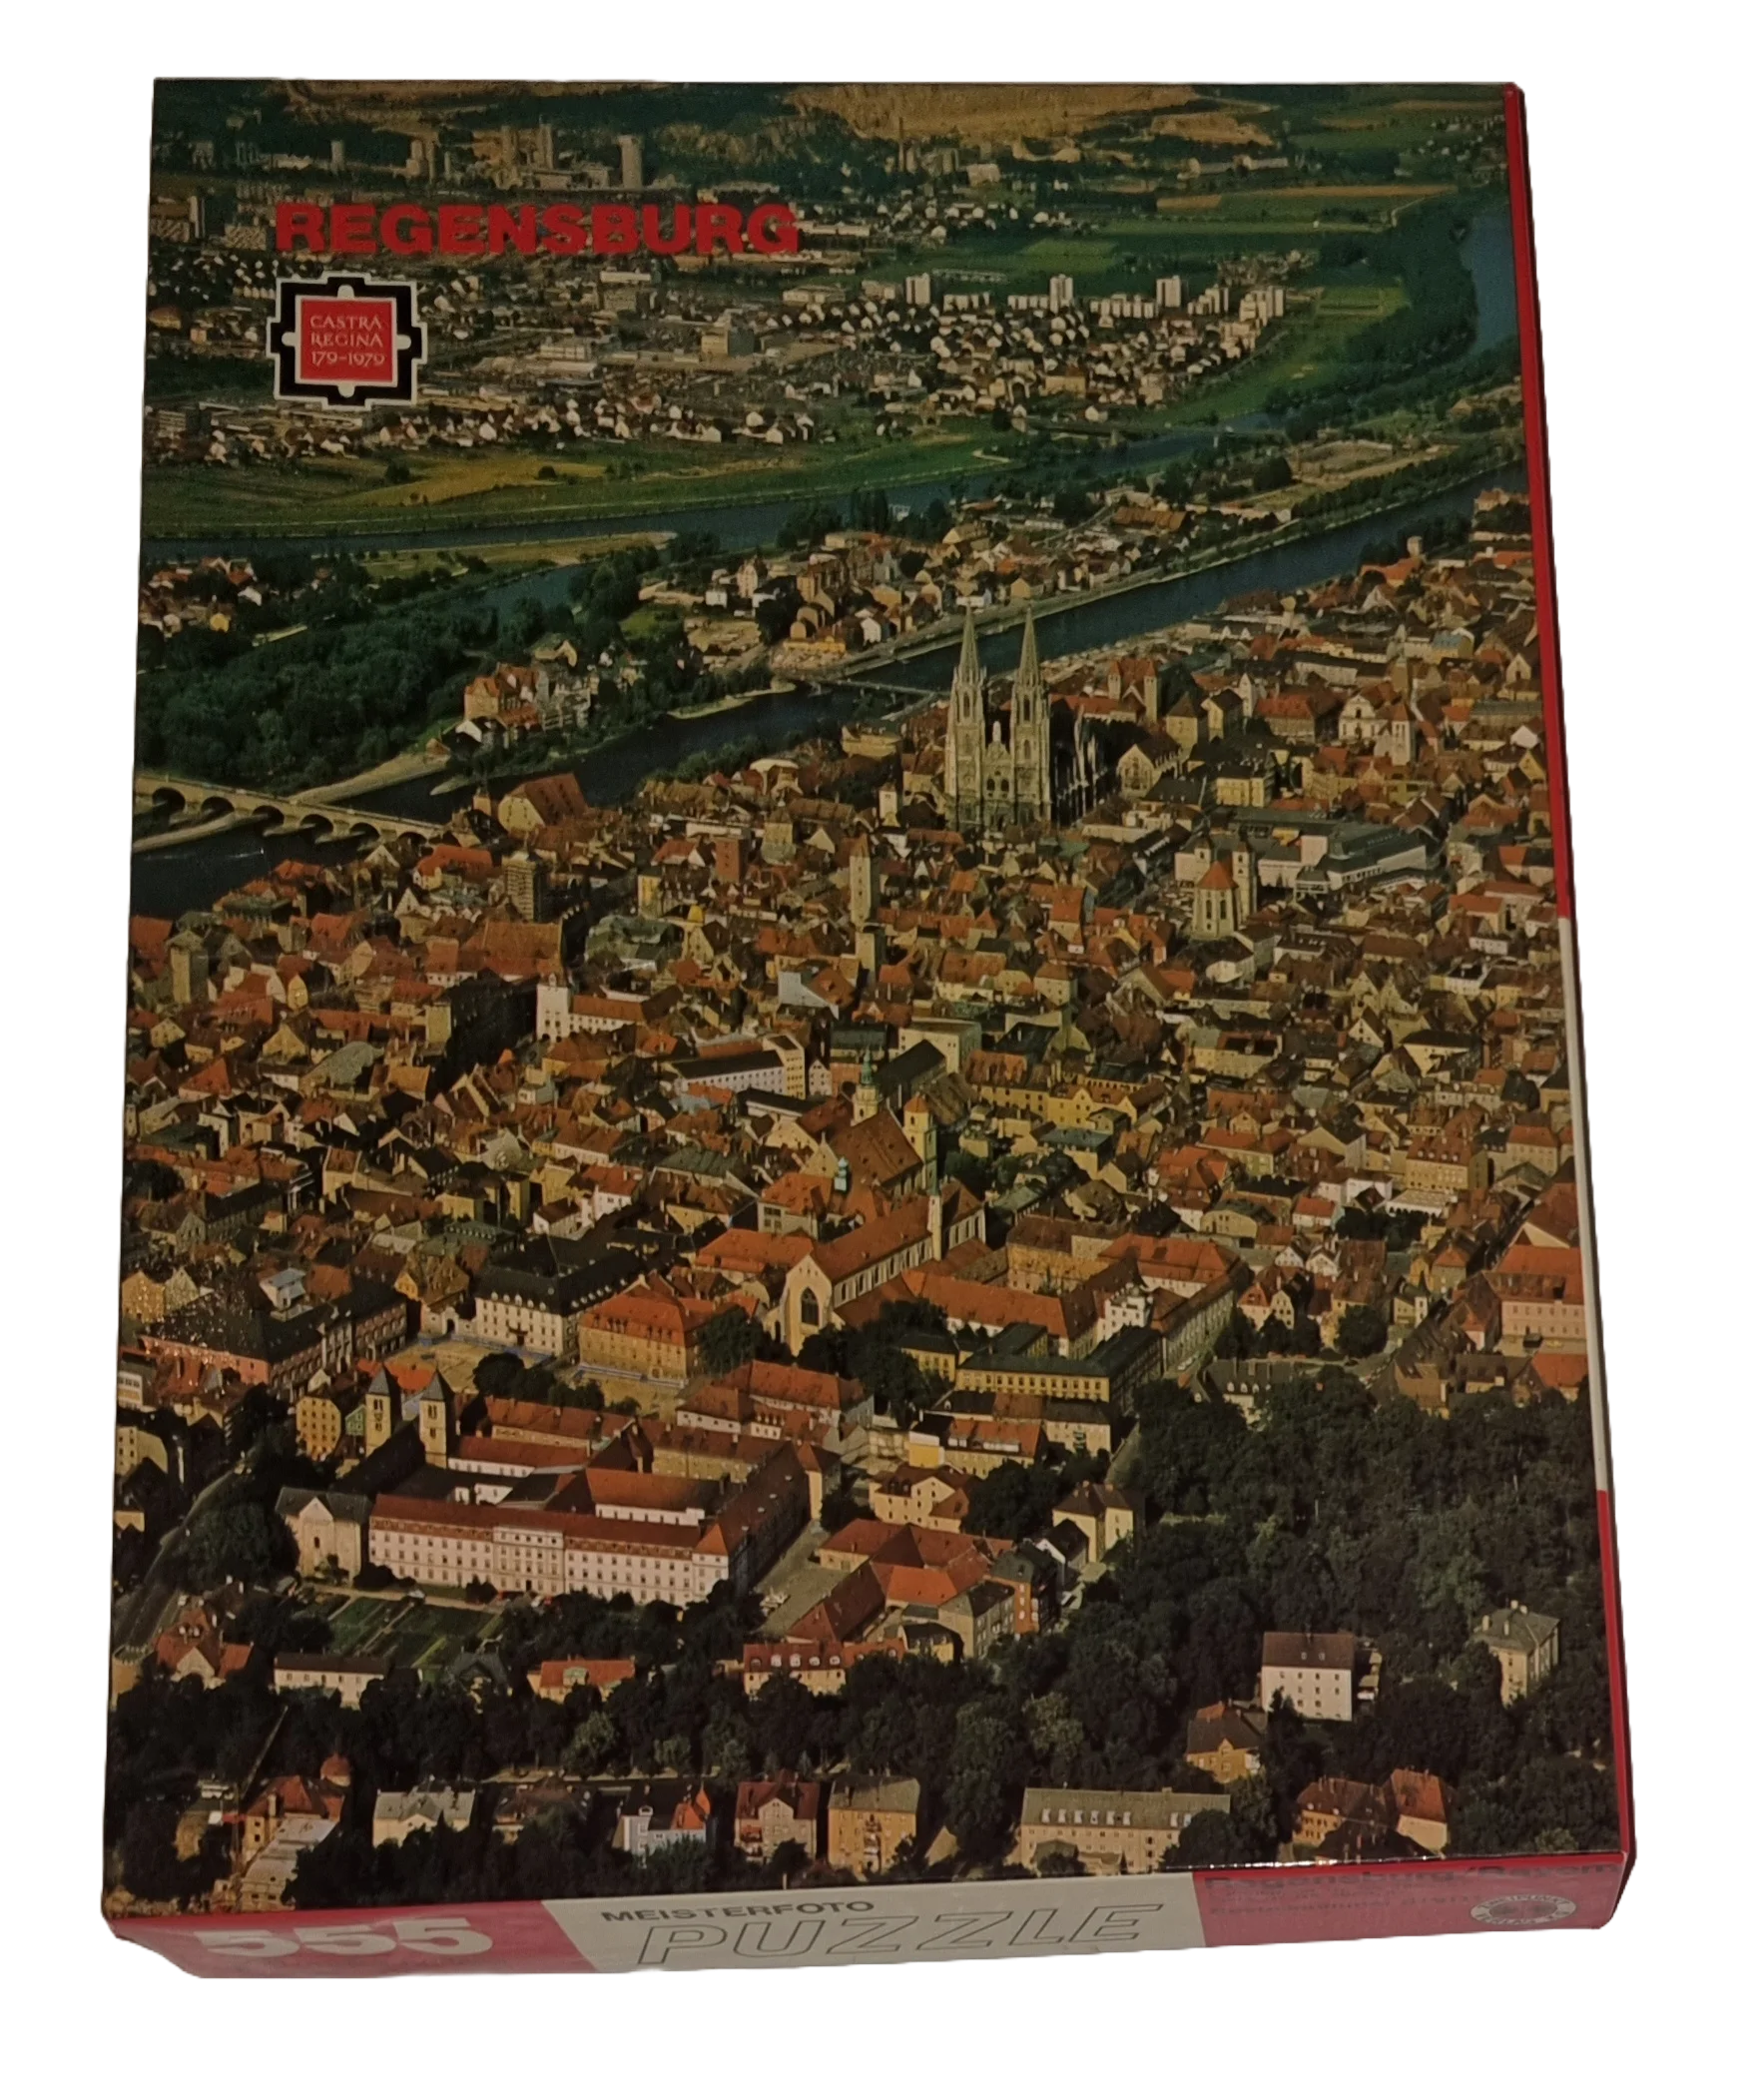 Zweipunkt Meisterfoto Puzzle 555 ungleiche Teile Regensburg/Bayern 819111